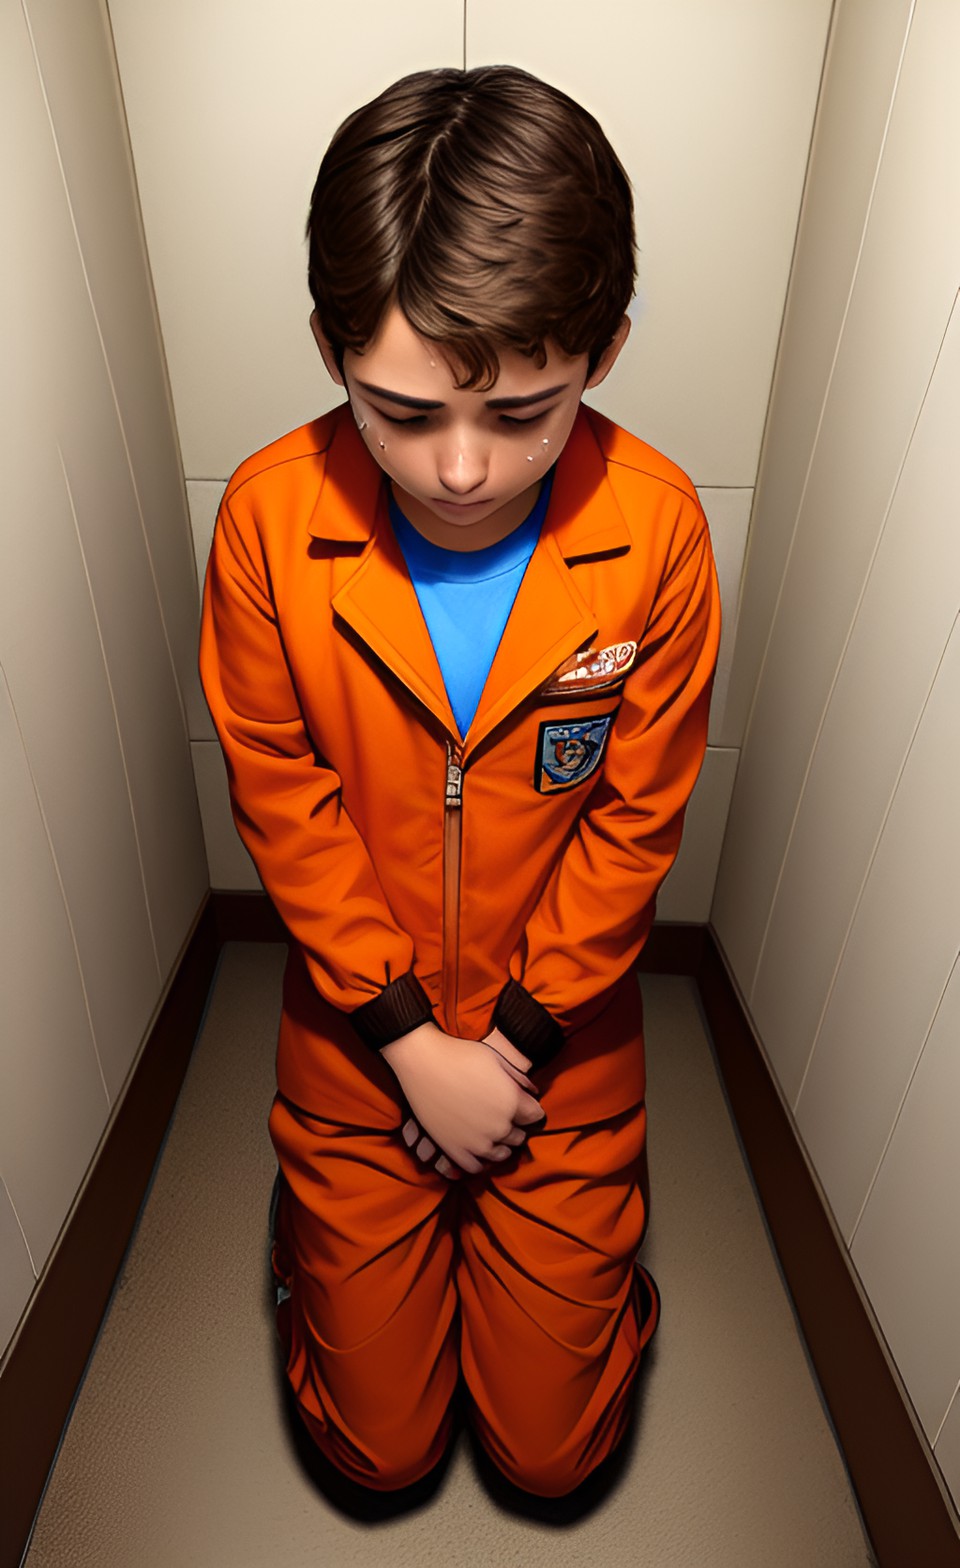 Prison boy